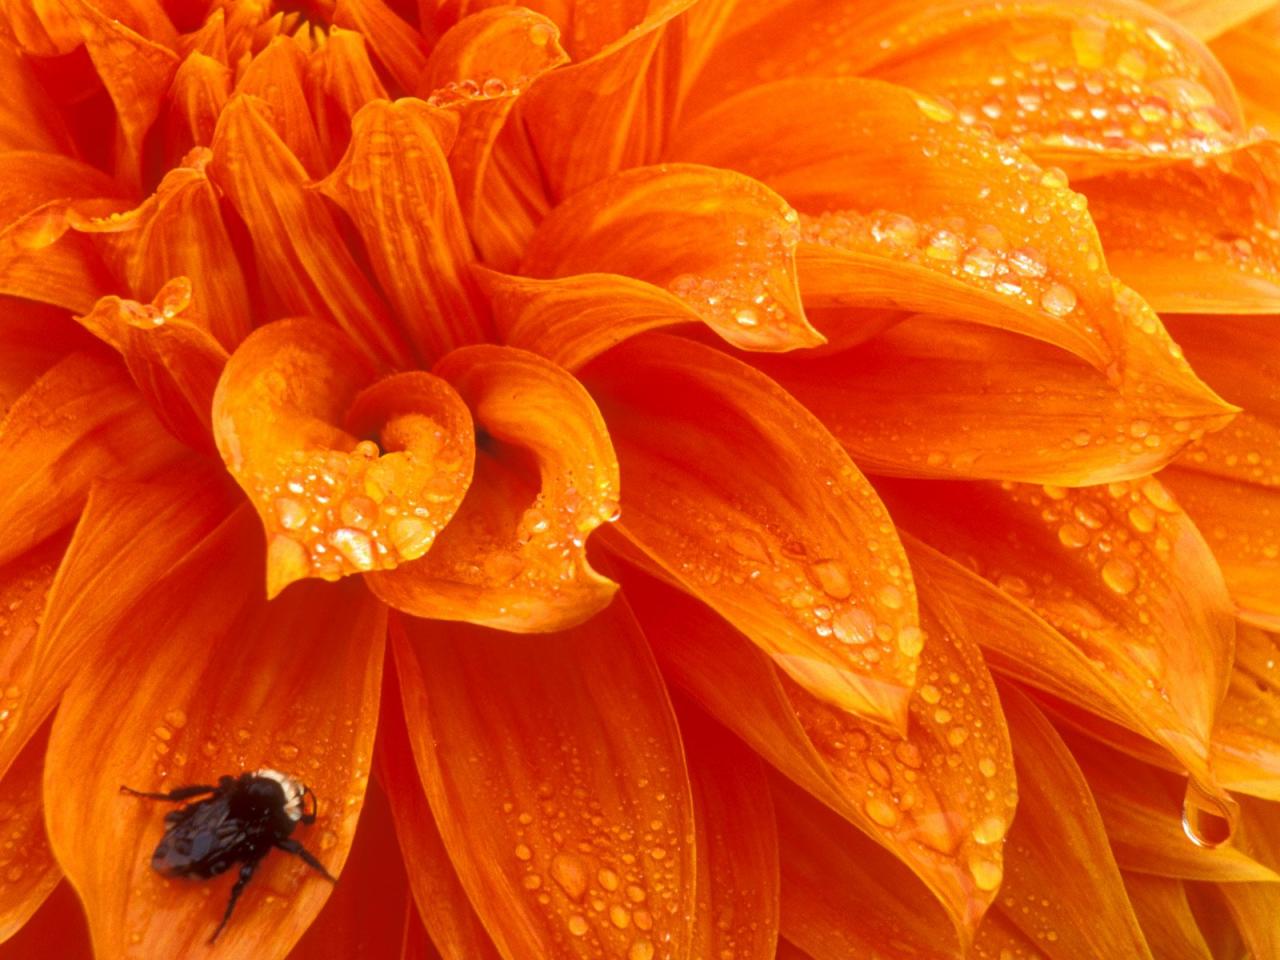 обои Bumblebee and Dewdrops, Dahlia фото